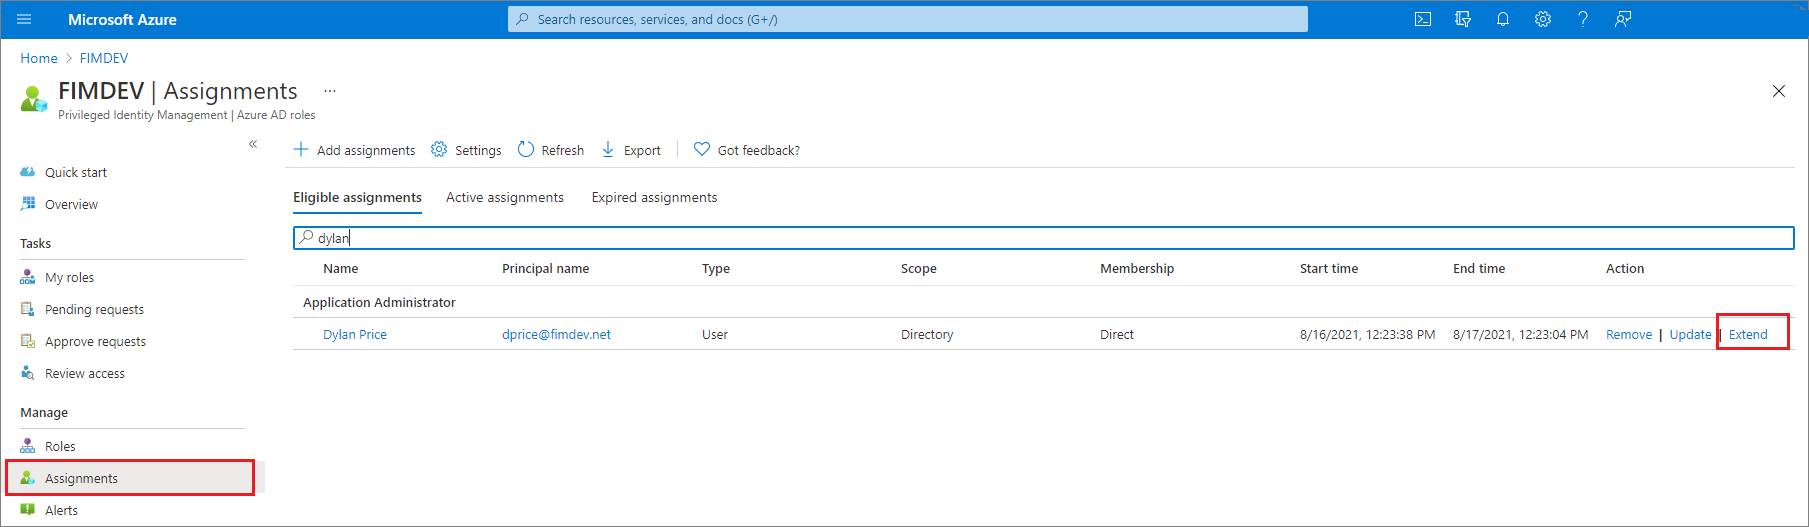 Snímek obrazovky zobrazující role Microsoft Entra – stránka Přiřazení se seznamem oprávněných rolí s odkazy na rozšíření